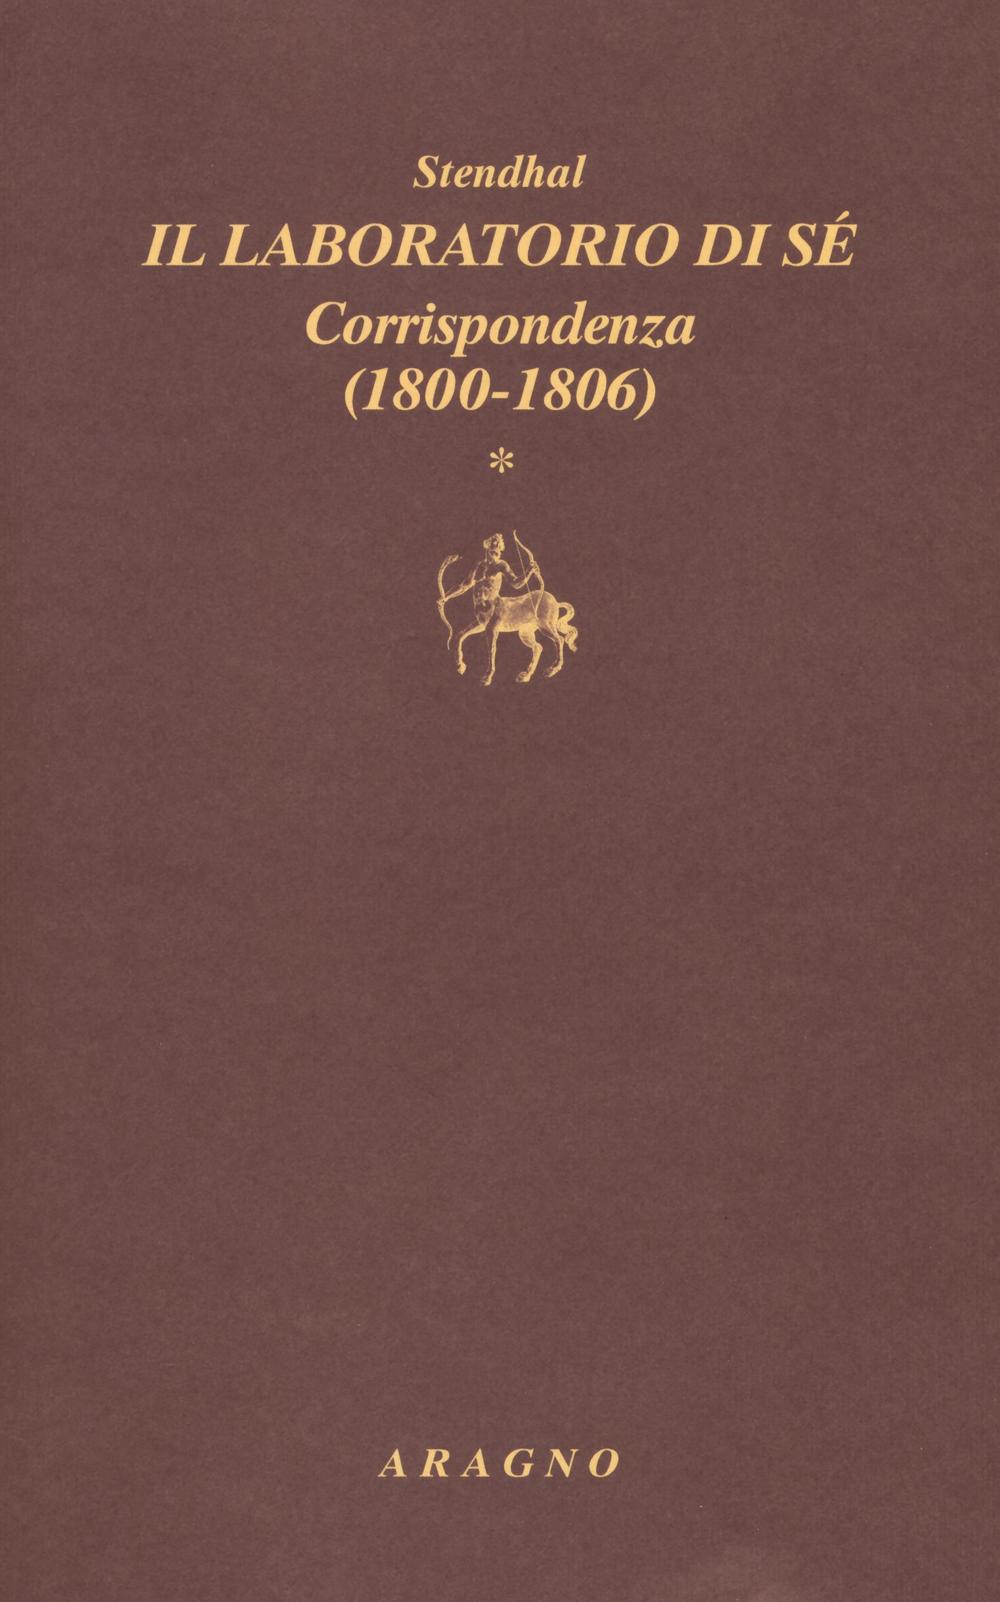 Il laboratorio di sé. Corrispondenza. Vol. 1: 1800-1806